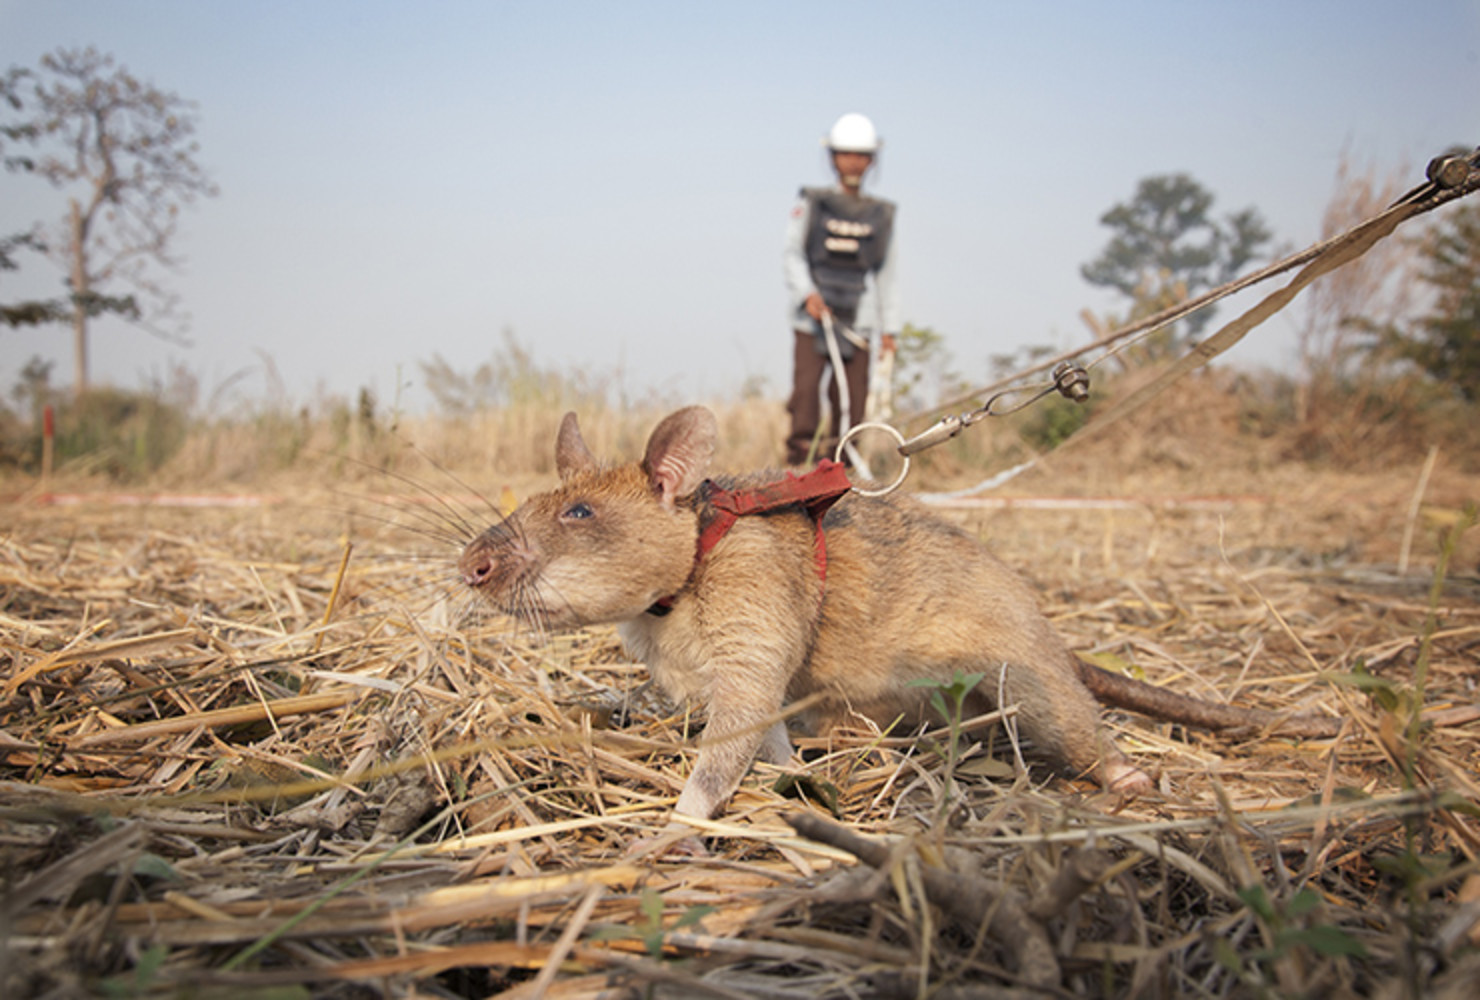 Magawa es una rata altamente capacitada para la detección de minas, también conocida como MDR (Mine Detection Rat). Magawa salva vidas usando su notable sentido del olfato para olfatear explosivos más rápido que los métodos existentes. Camboya es el segundo país más minado del mundo y Magawa tiene la misión de proteger a las comunidades locales.